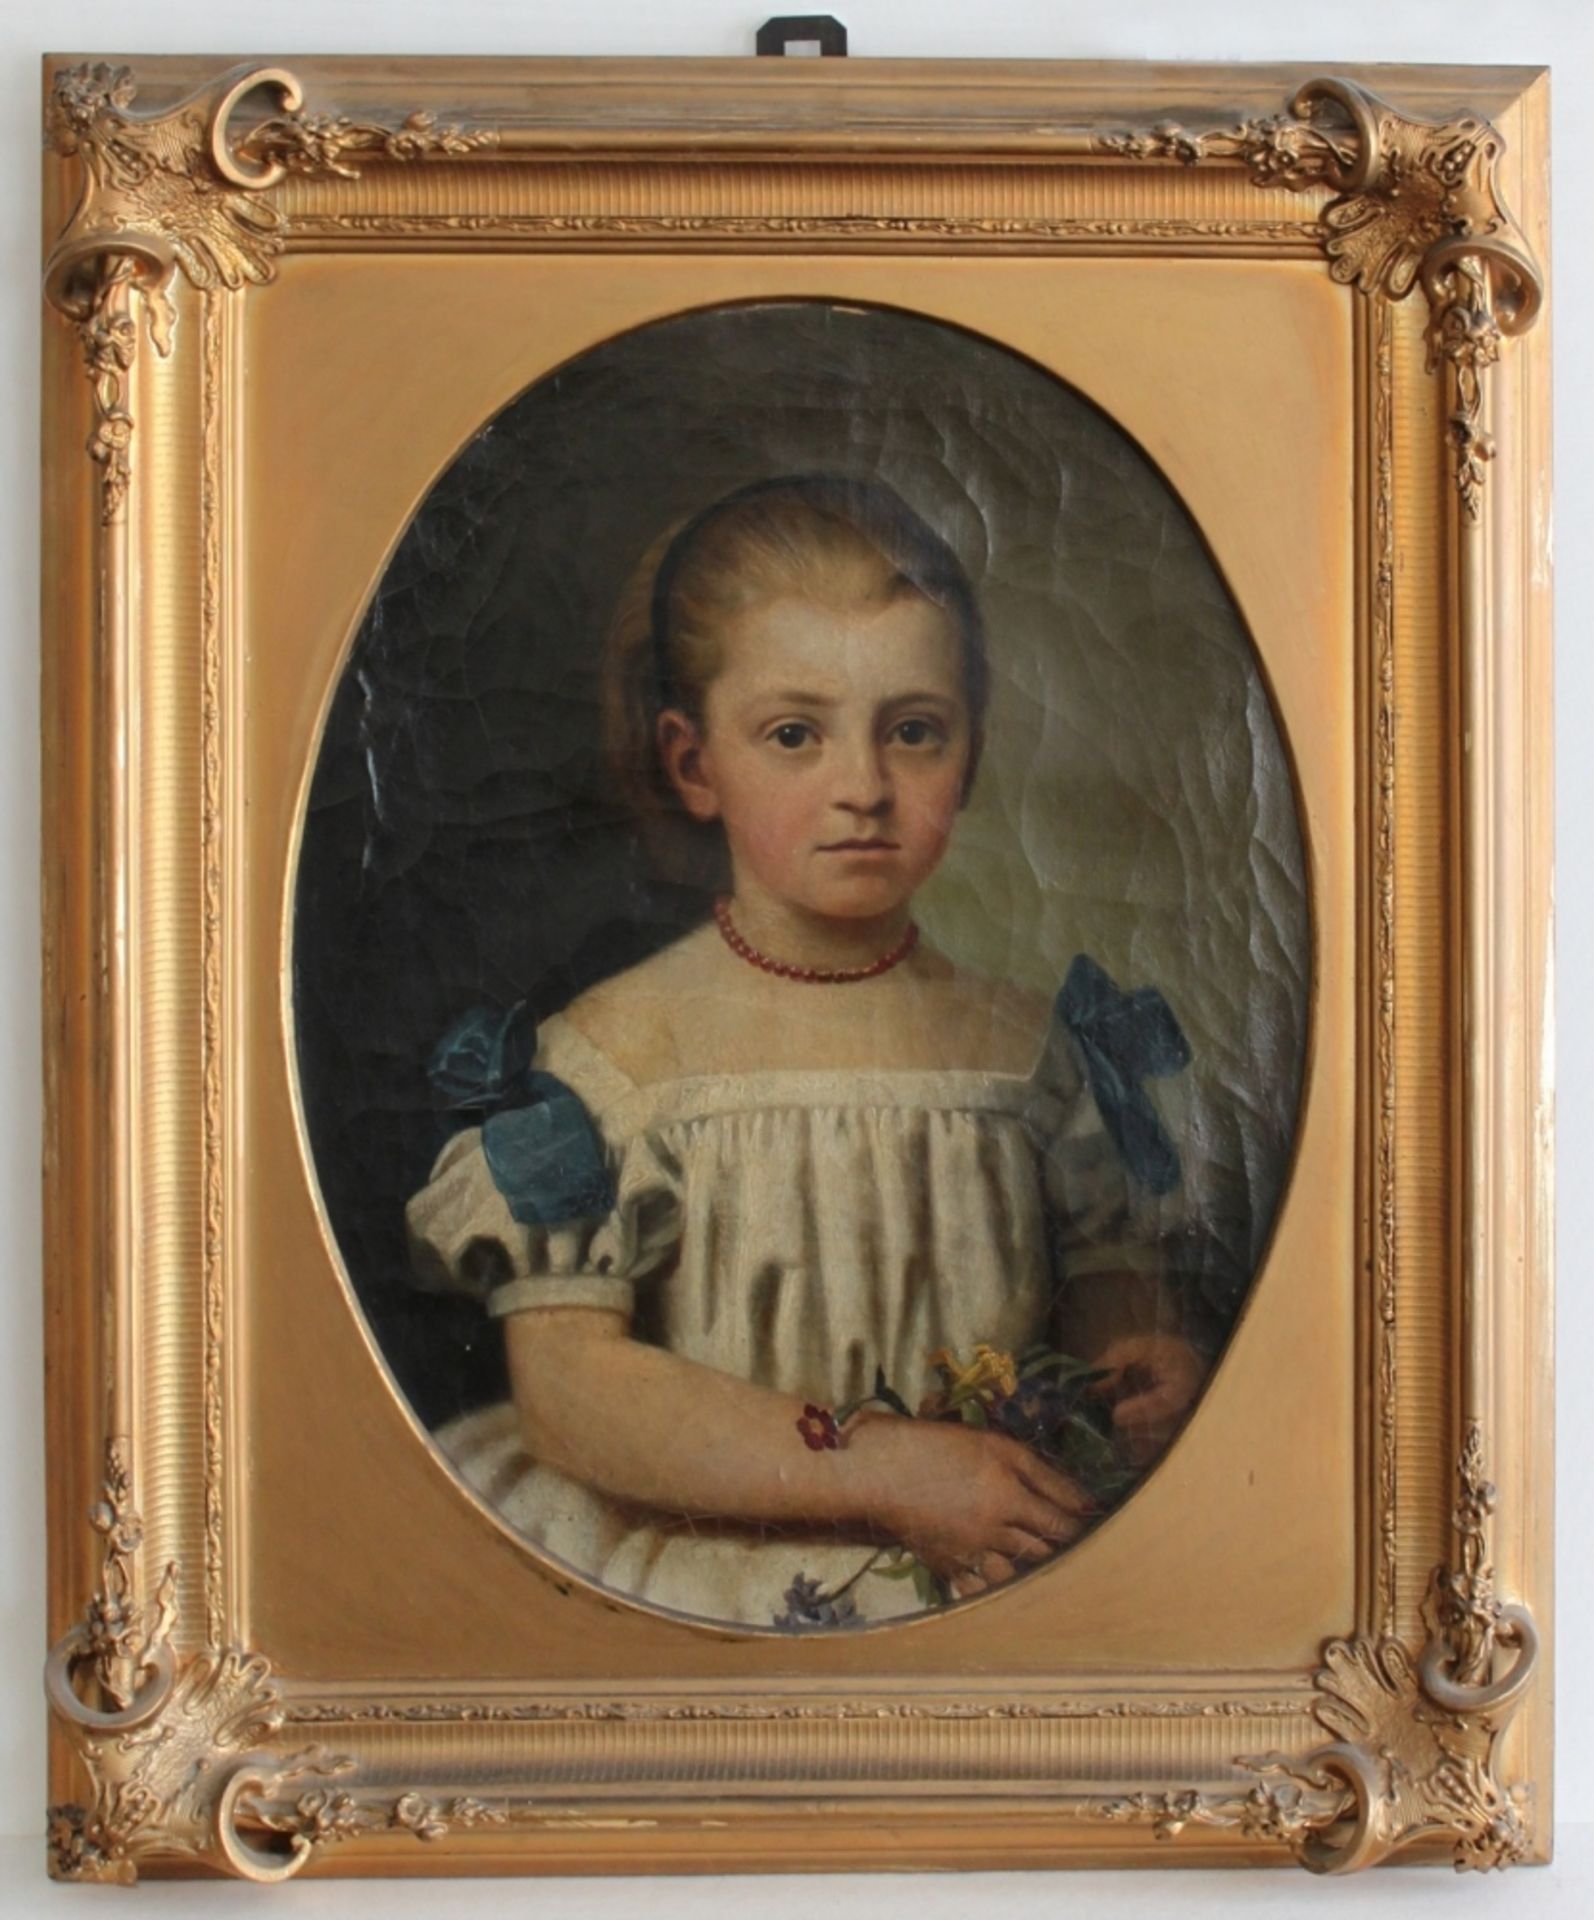 Braunschweig. Porträt. Mathilde Kindt als junges Mädchen (verheiratete von Campe). Ölgemälde auf